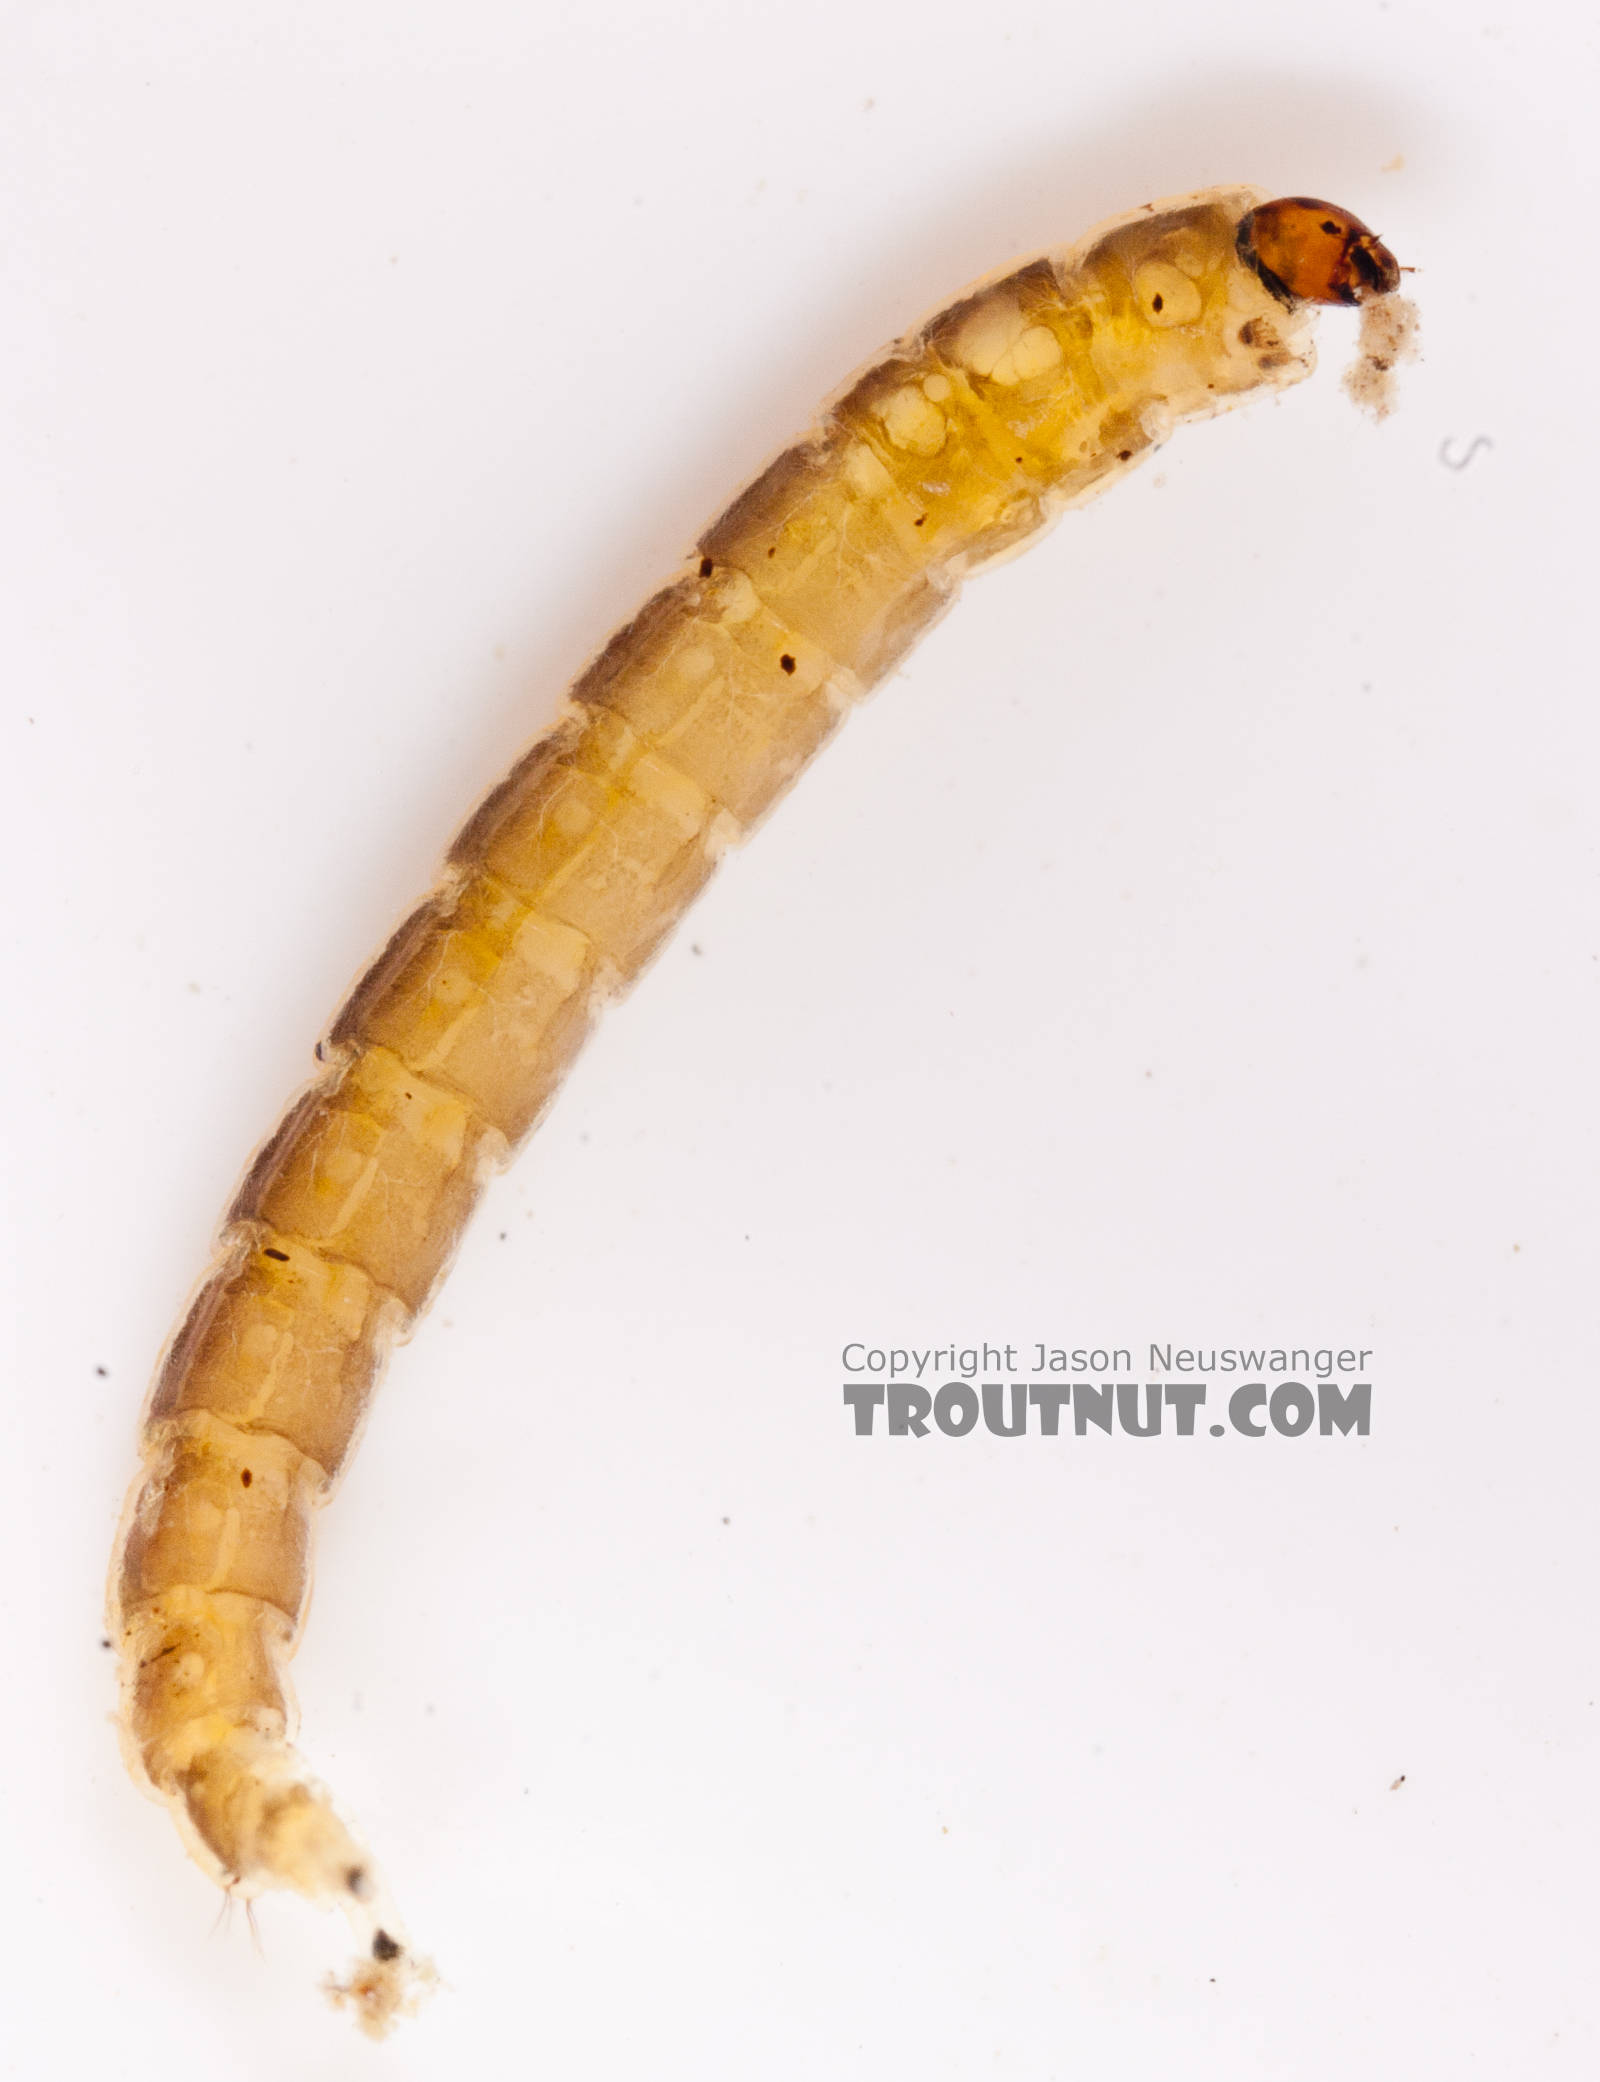 Chironomidae (Midges) Midge Larva from the Gulkana River in Alaska